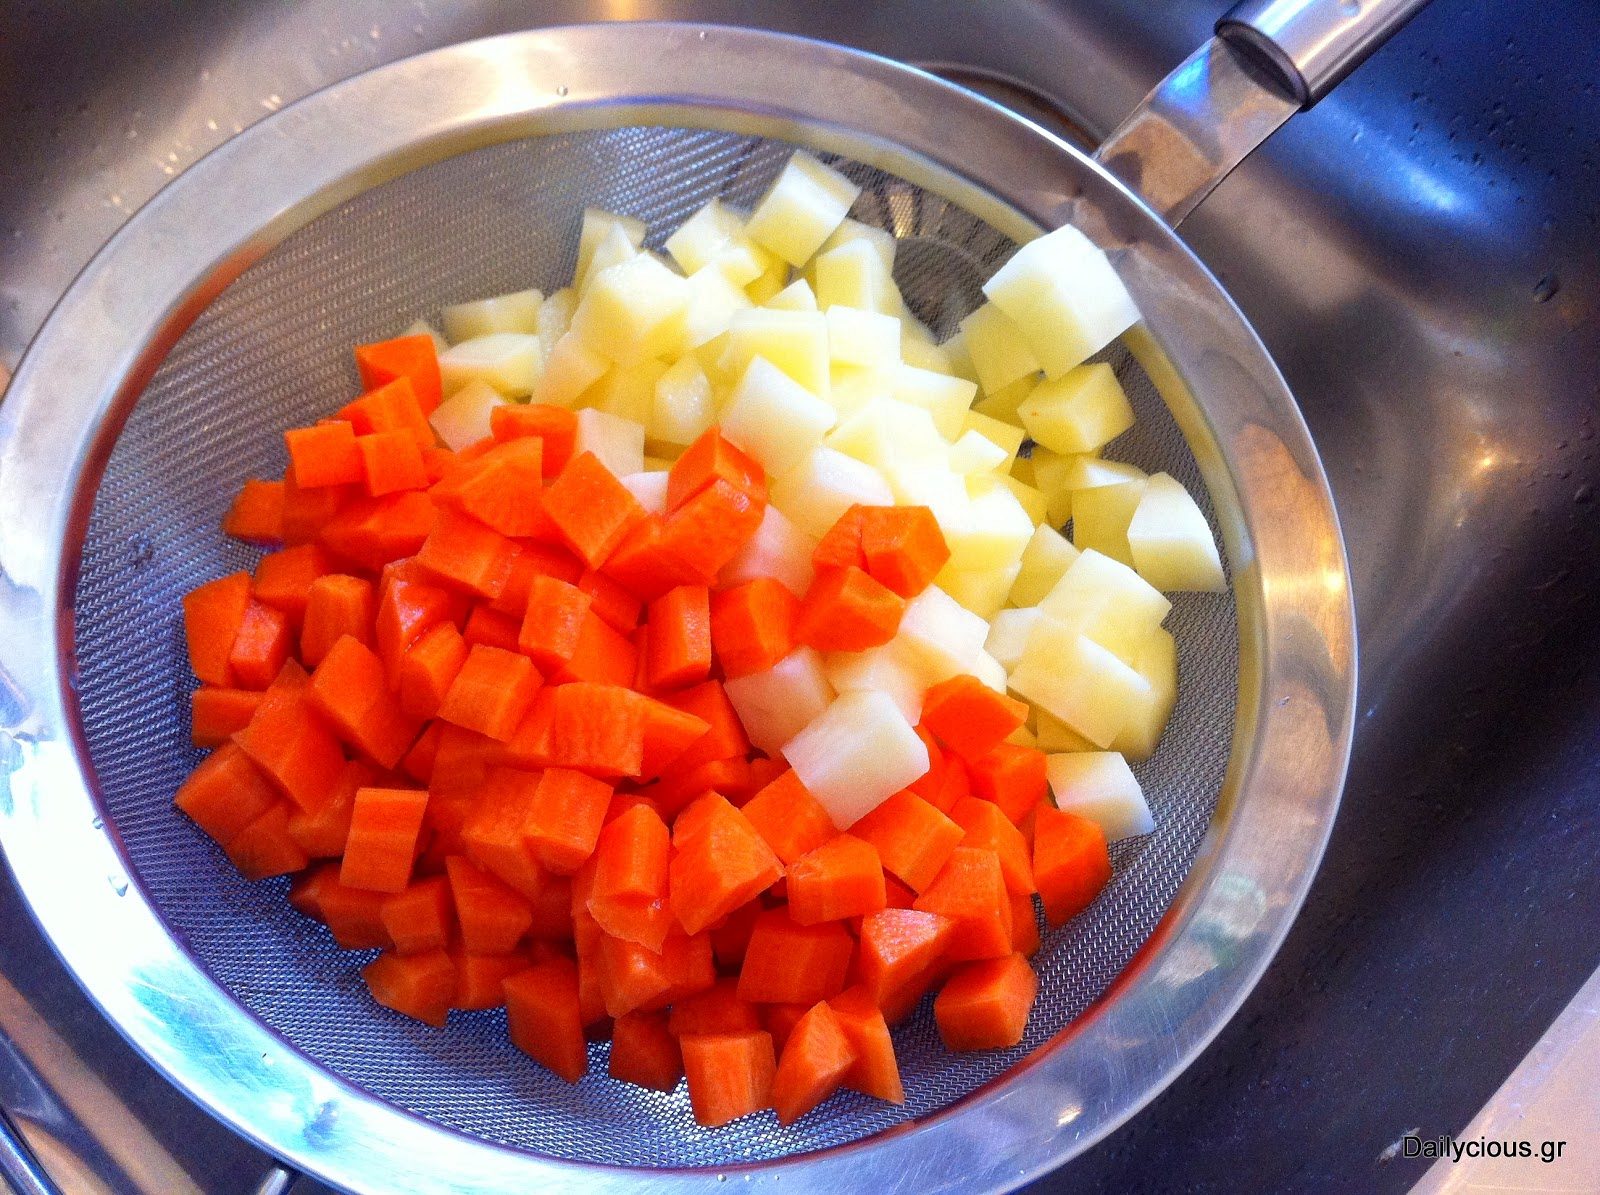 Οι κομμένες πατάτες και τα καρότα.